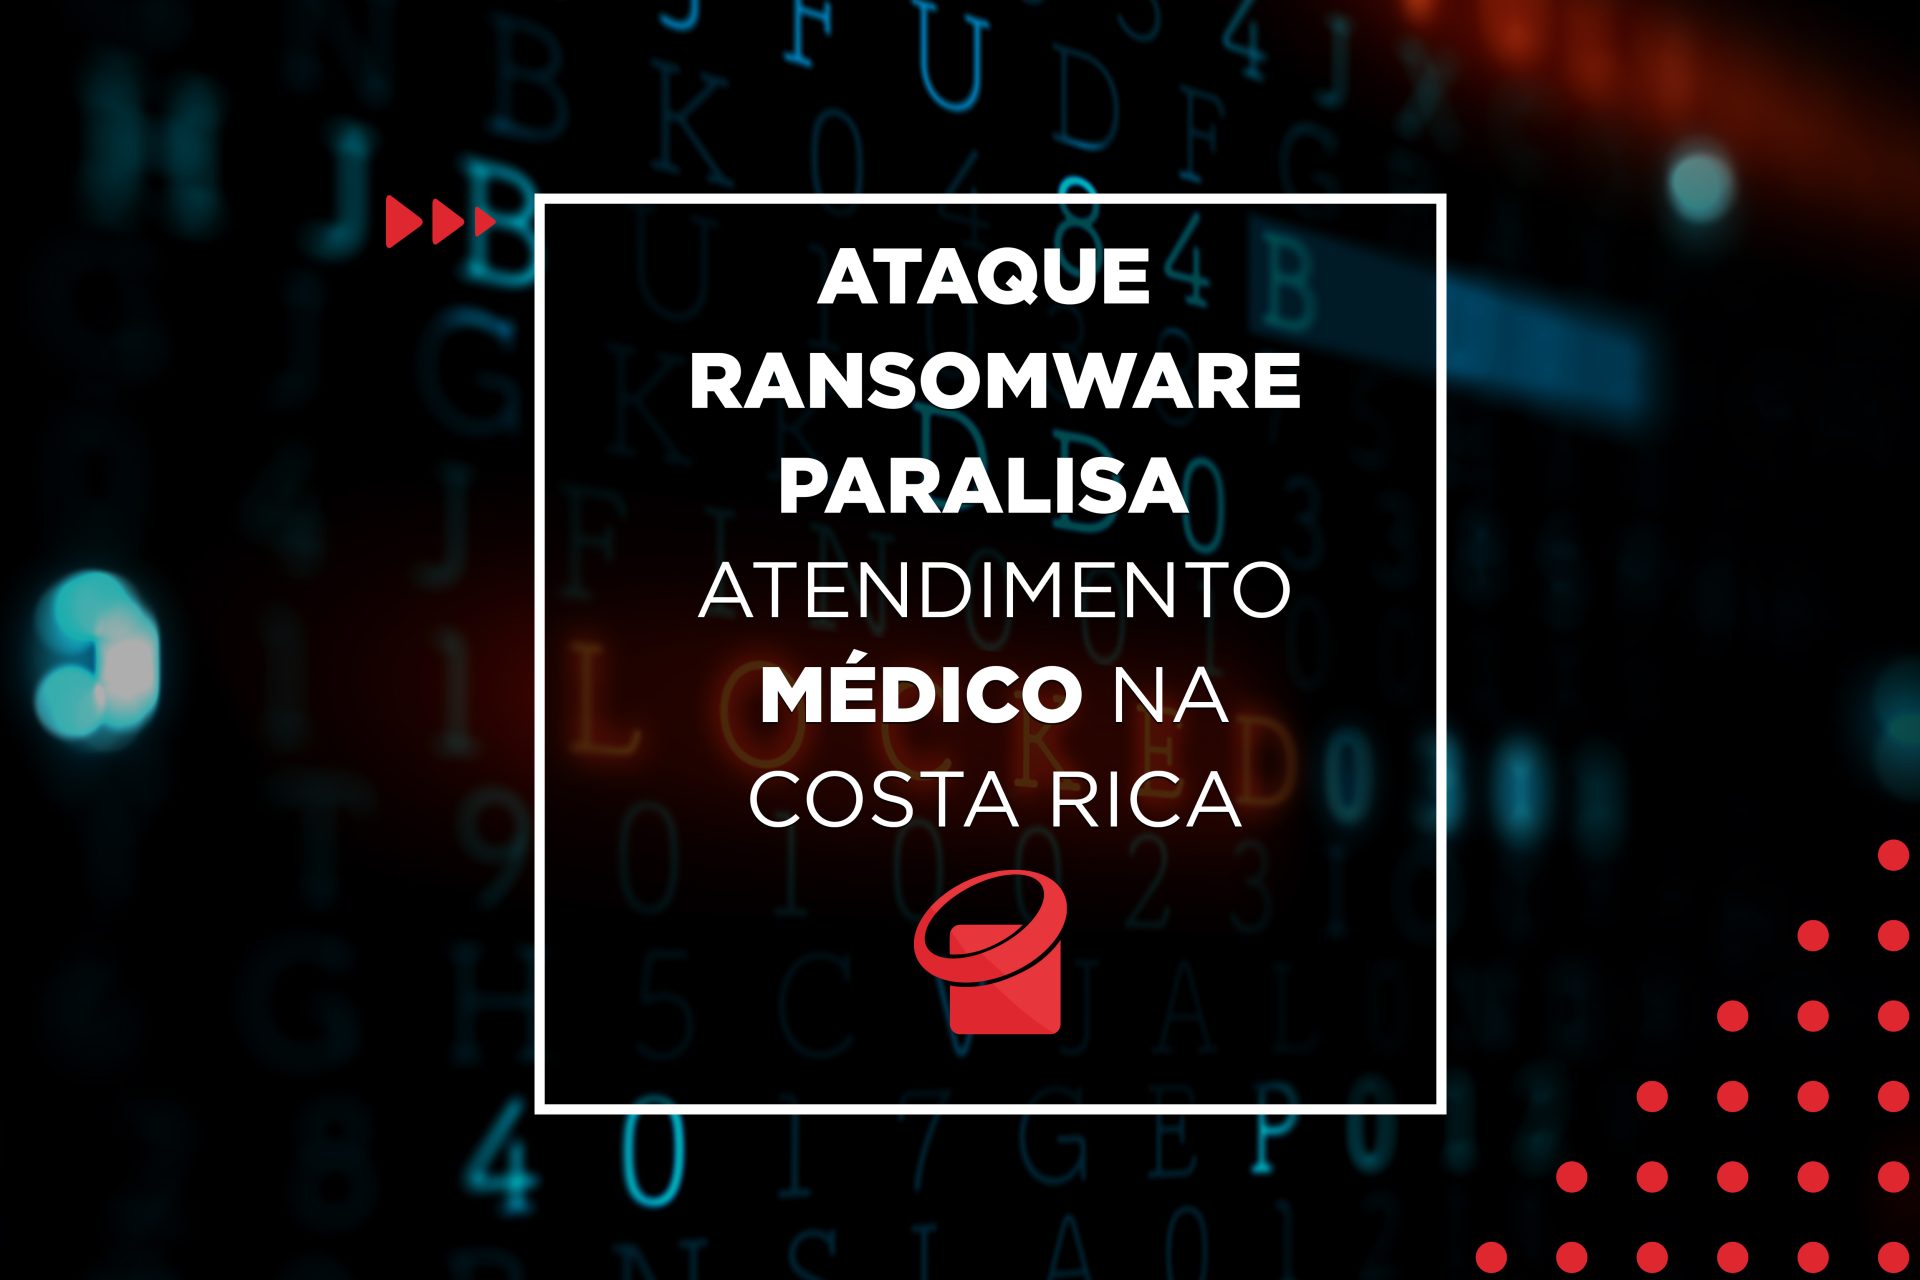 Ataque Ransomware paralisa atendimento médico na Costa Rica